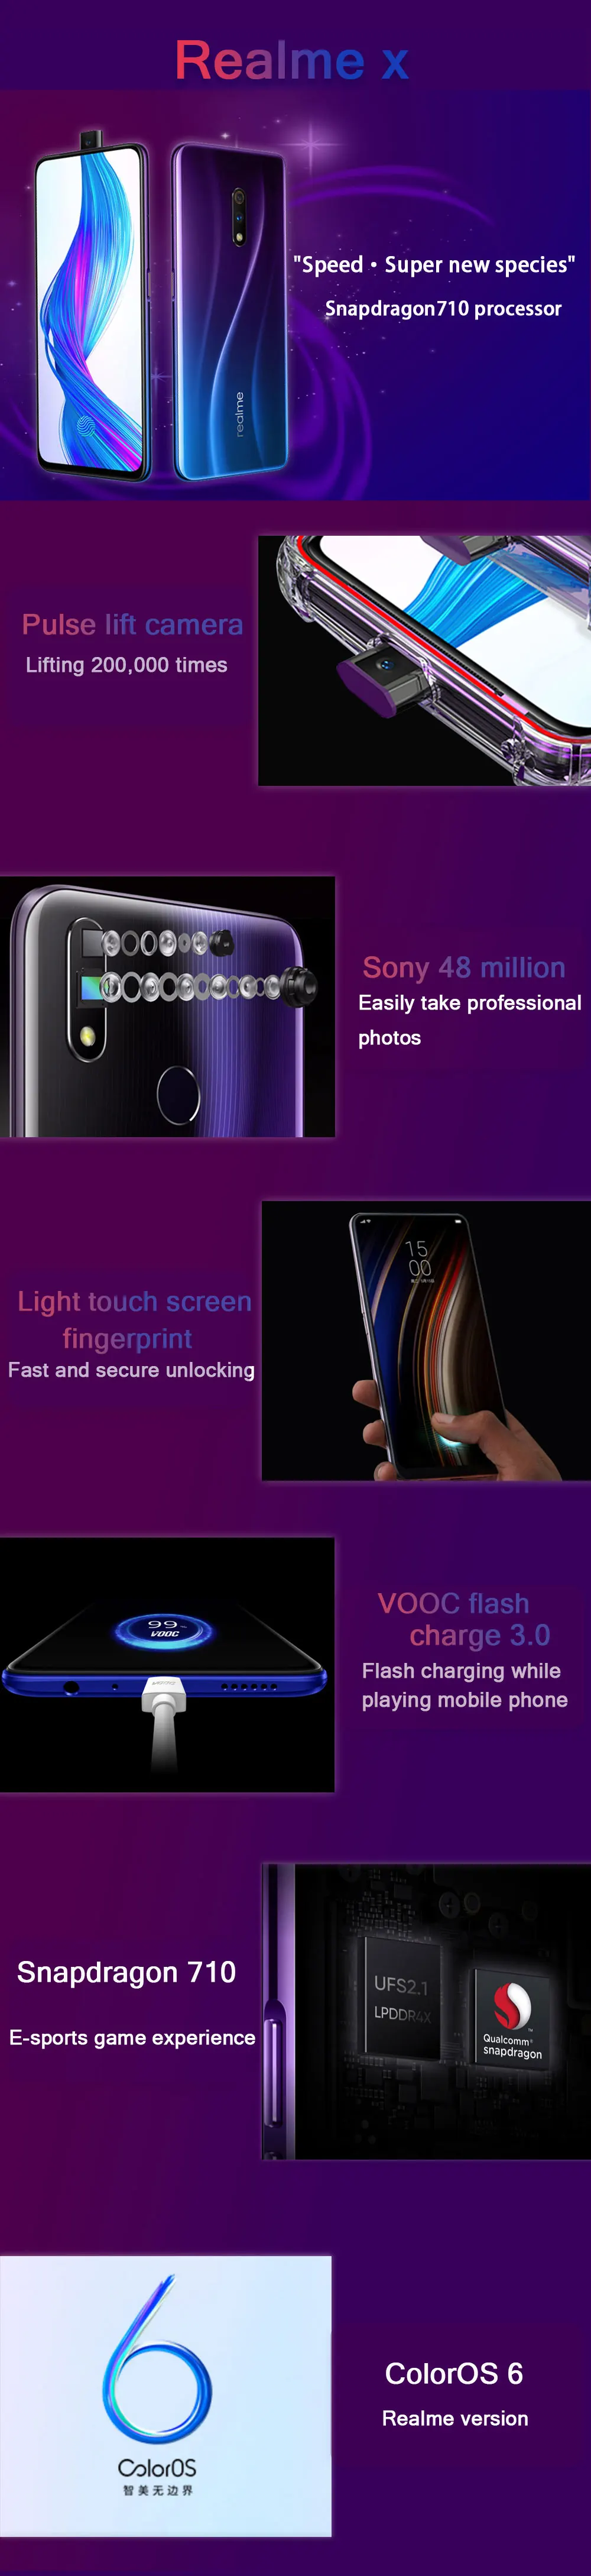 Смартфон OPPO Realme X, 6,53 дюймов, отпечаток пальца, 3765 мА/ч, 8 ГБ ОЗУ, 128 Гб ПЗУ, Восьмиядерный процессор Snapdragon 710, 4G